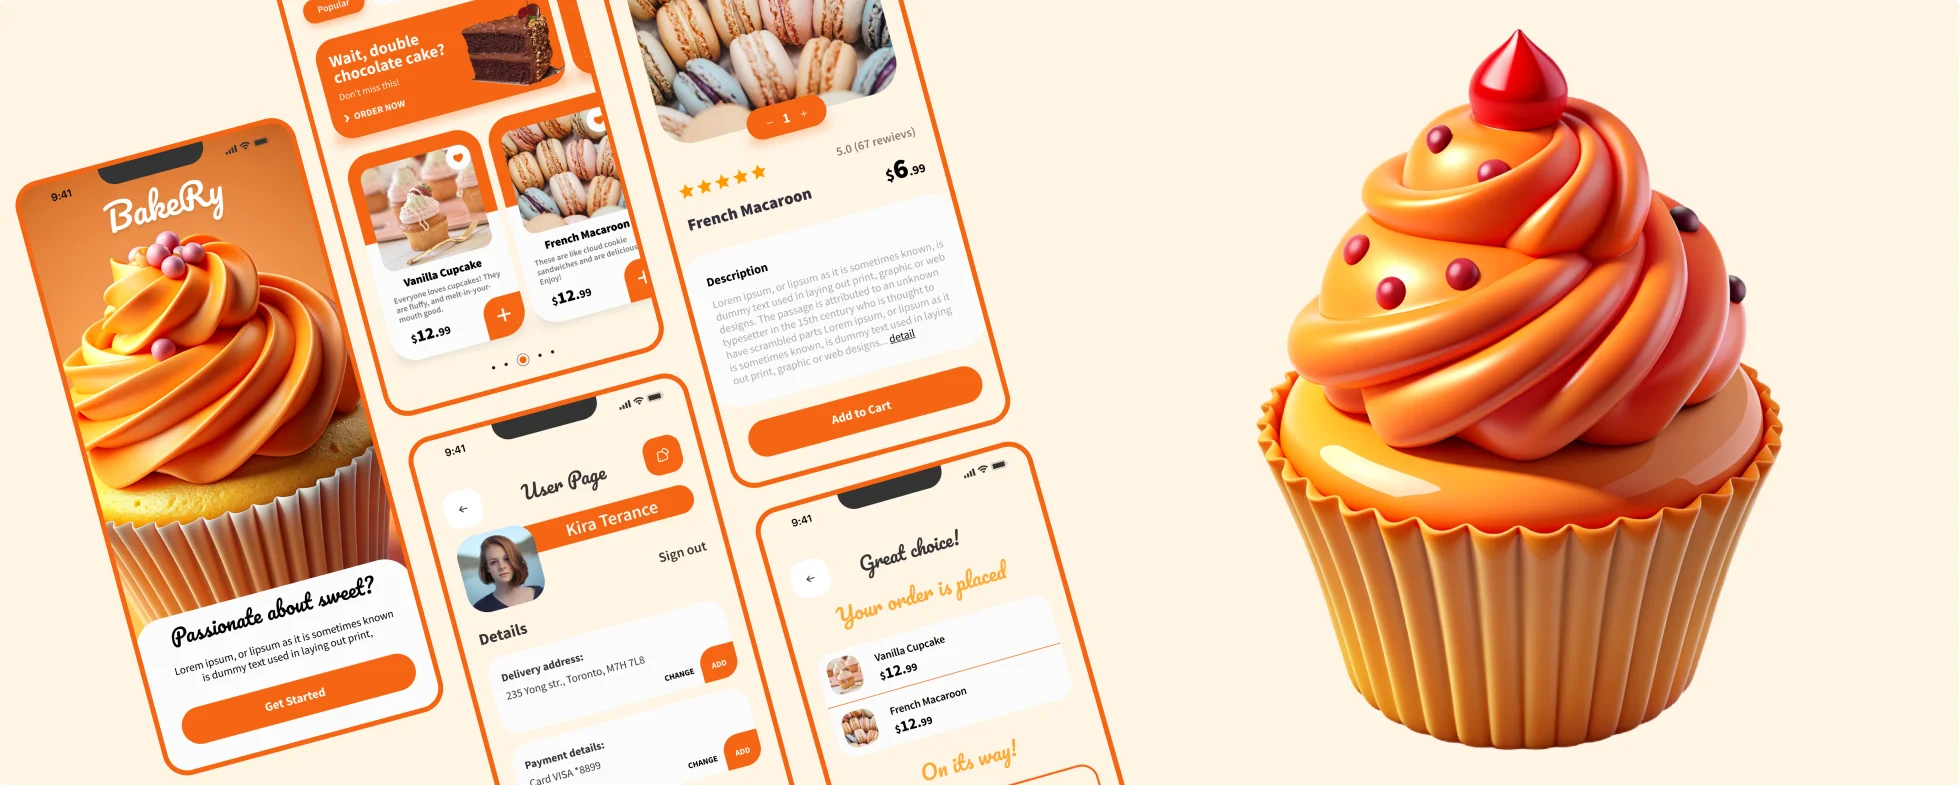 Bakery – App Design